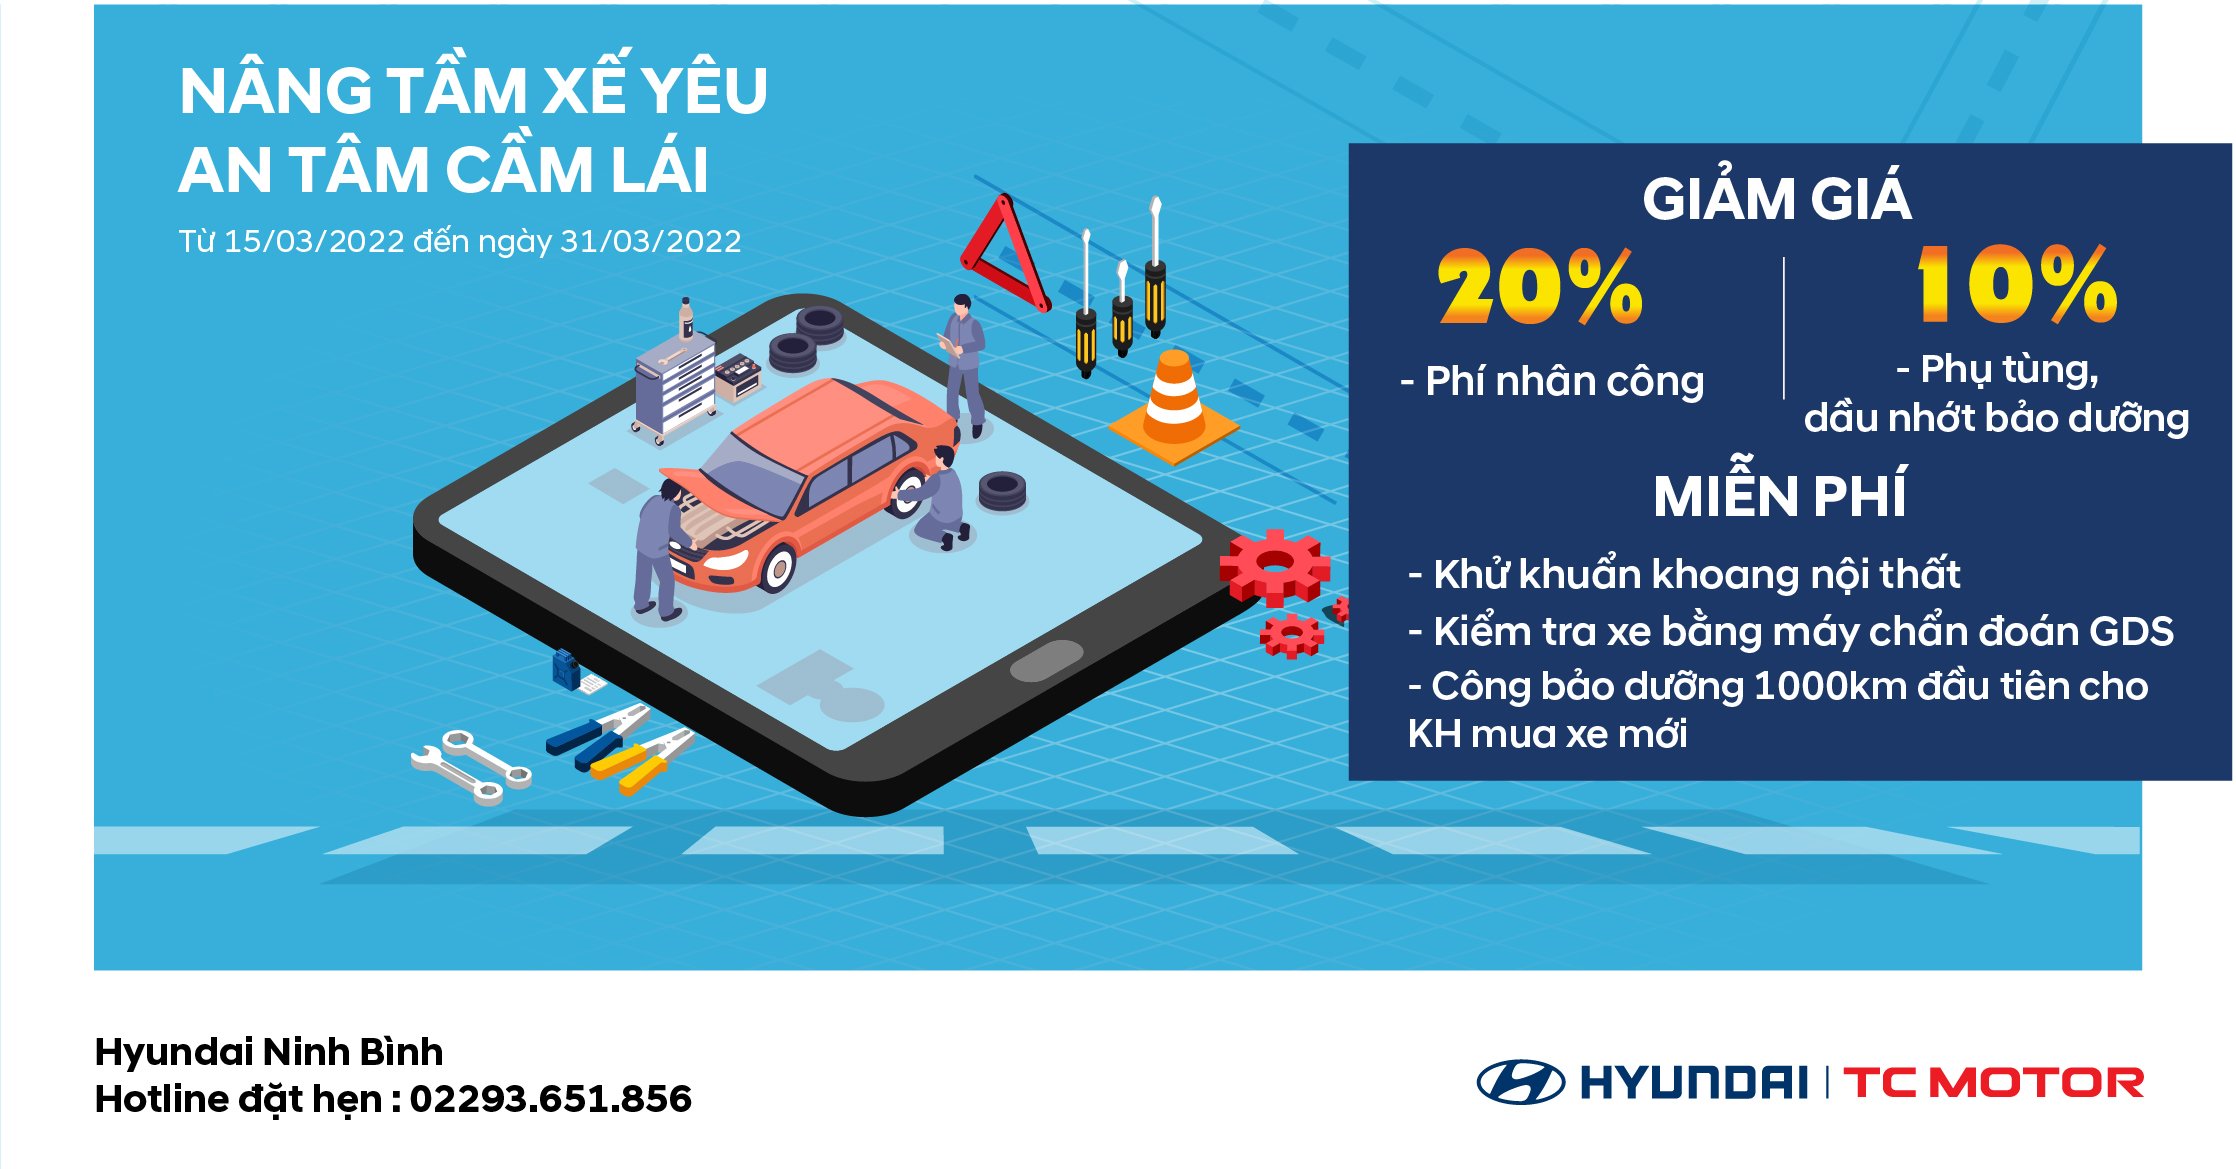 "Nâng Tầm Xế Yêu - An Tâm Cầm Lái" cùng Hyundai Ninh Bình